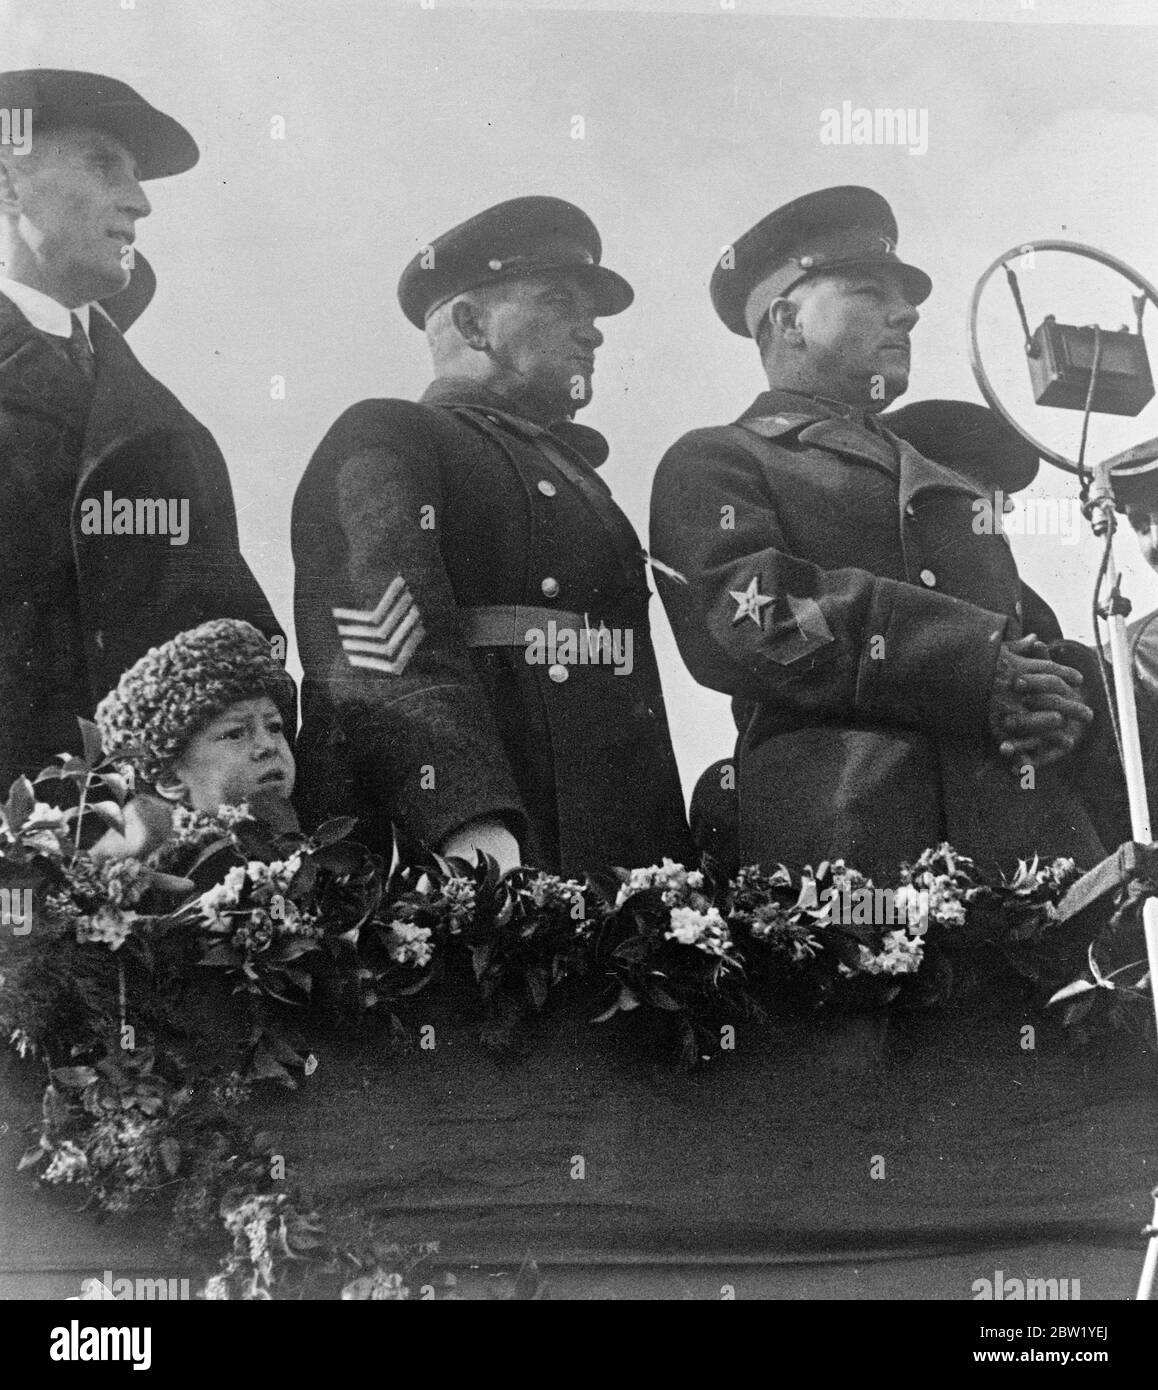 Le général de l'Armée rouge a été signalé en état d'arrestation dans une nouvelle « purge ». Le général Levantovsky, commandant du district transcaucasien, aurait été enlevé de son poste et arrêté lors de la nouvelle "purge" de l'armée soviétique. Levantovsky a été suspendu par Kuibisheff. Selon un message de Varsovie, il est question à Moscou d'une révolte imminente contre la dictature de Joseph Staline. Photos, photo récente du général Levantovsky. 10. Juin 1937 Banque D'Images